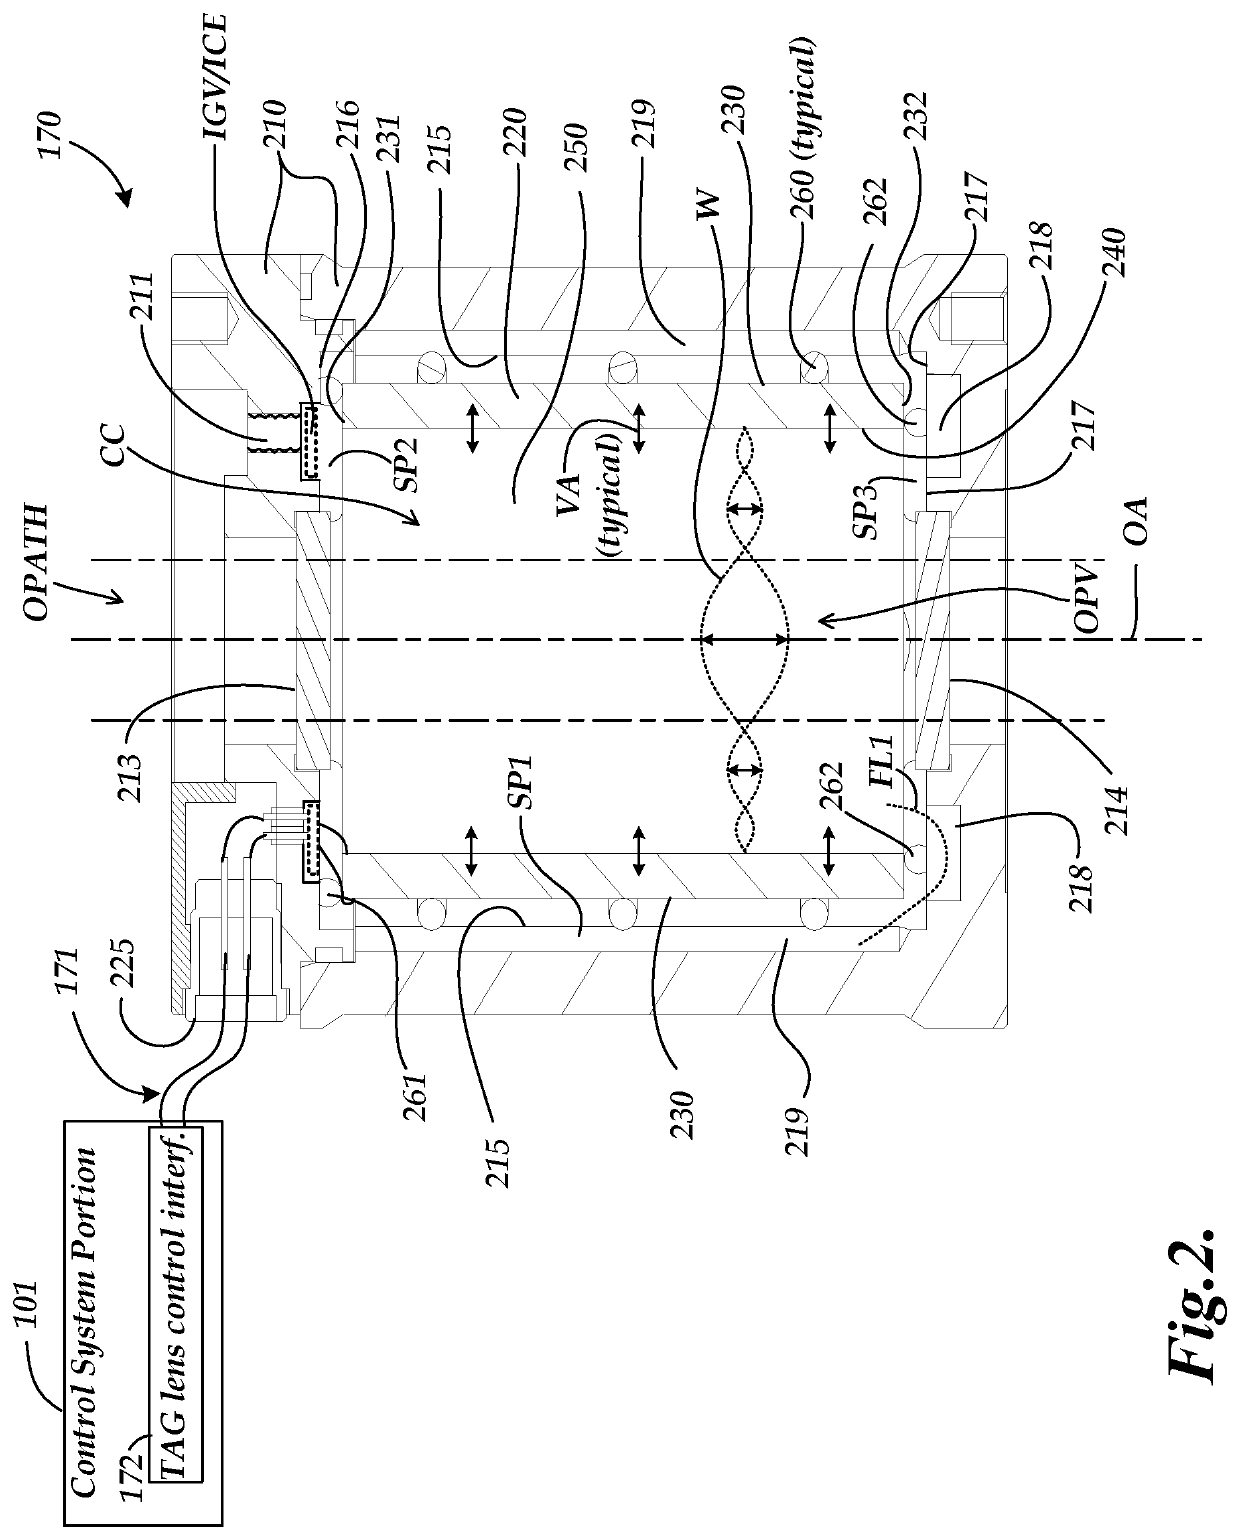 External reservoir configuration for tunable acoustic gradient lens